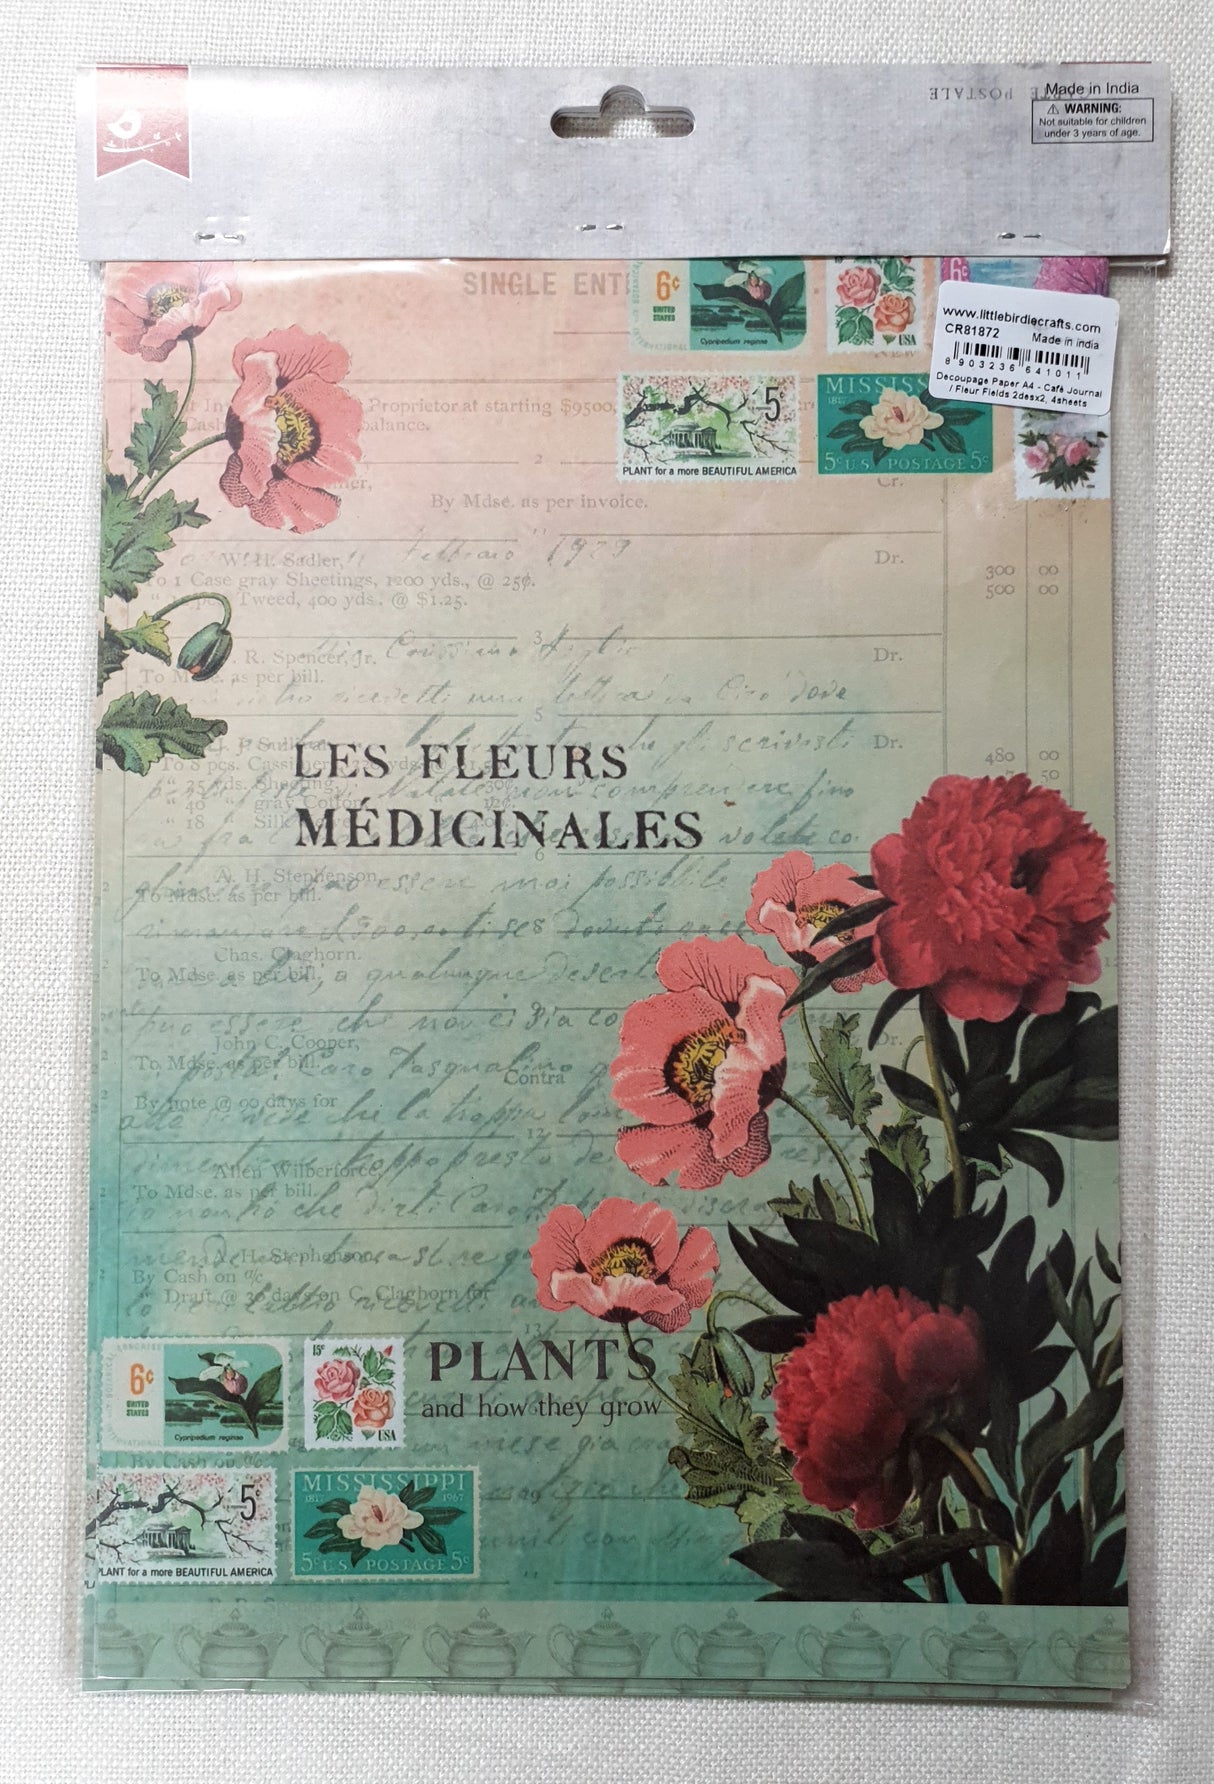 Decoupage Paper - A4 size - 4 sheets - (DP-1007) - Café Journal / Fleur Fields